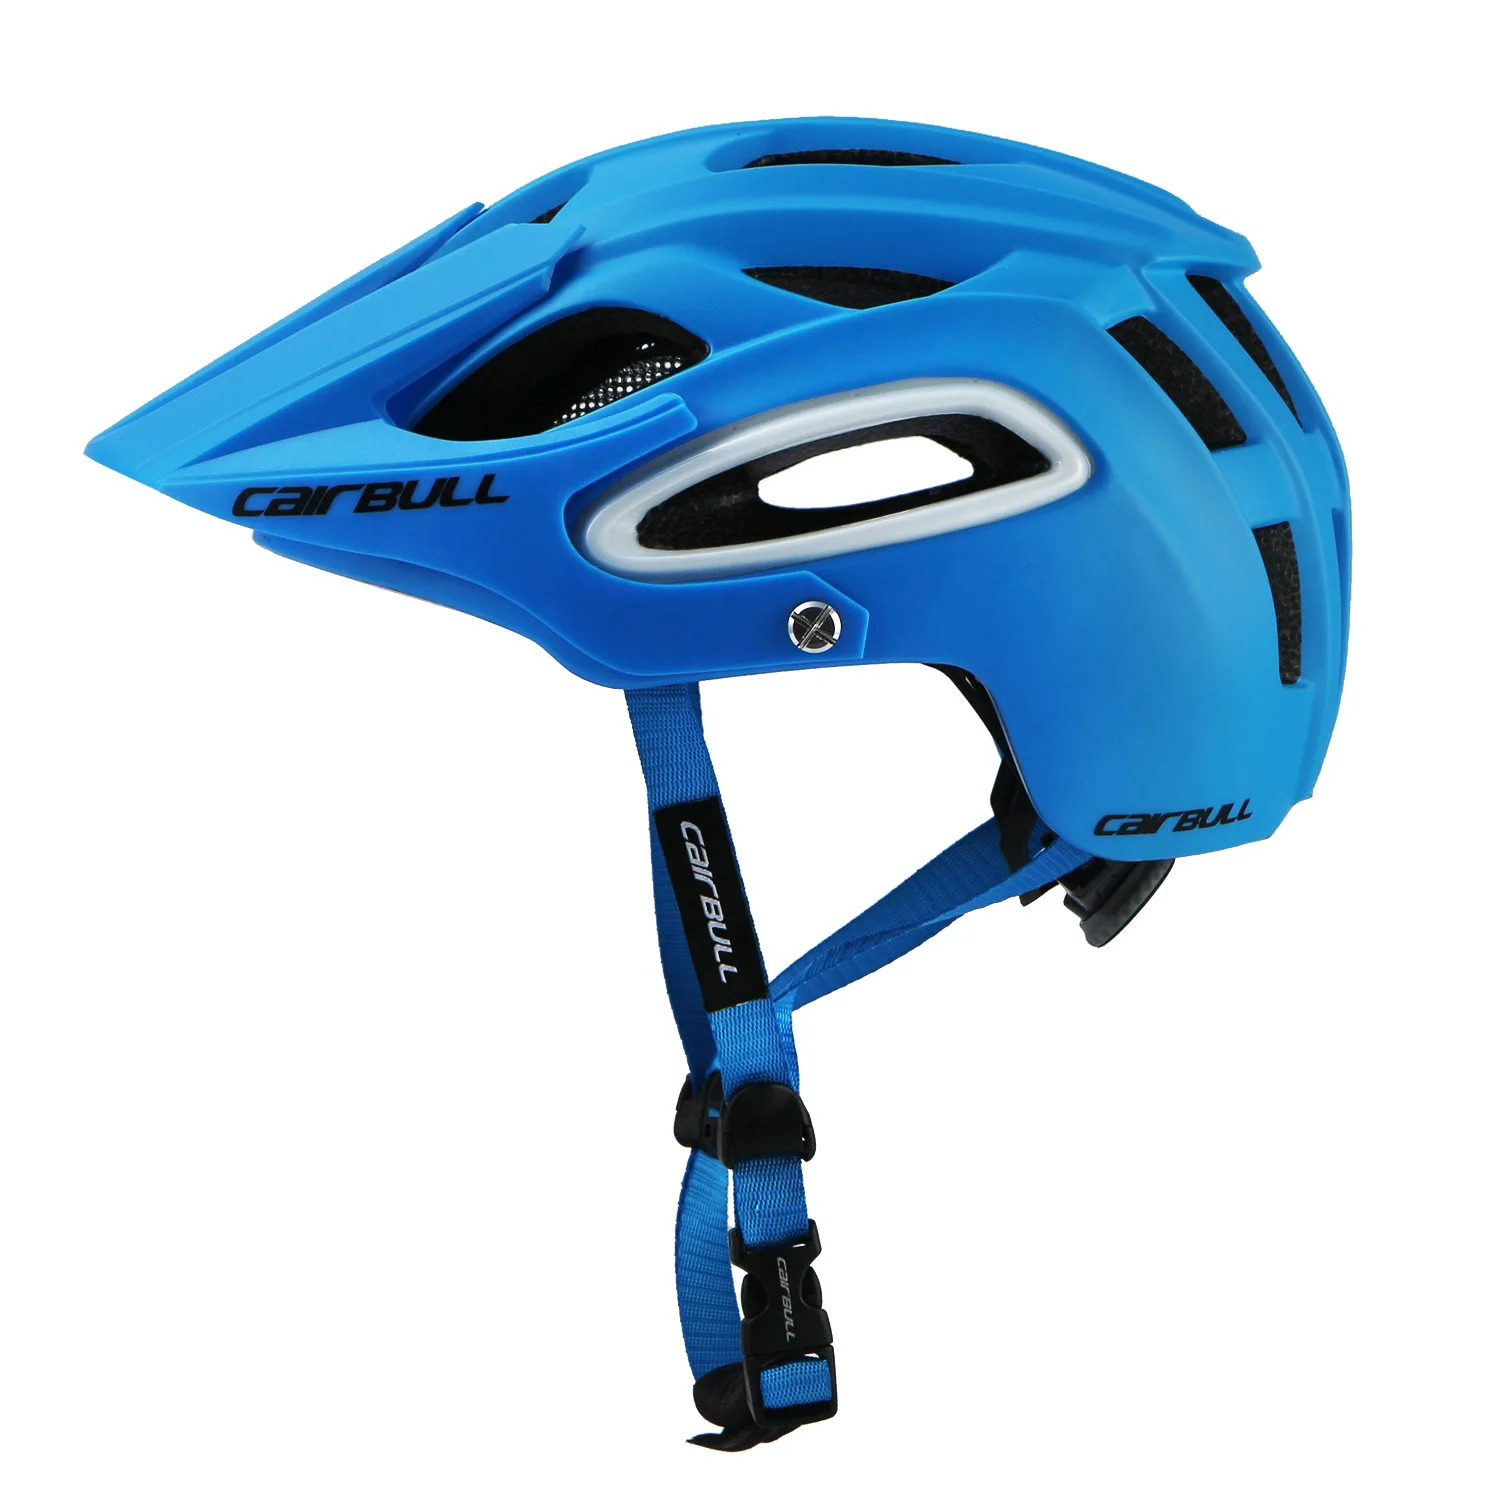 CAIRBULL спортивный велосипедный гоночный шлем дополнительный цвет горный шоссейный велосипедный шлем с запасной подкладкой цельное литье